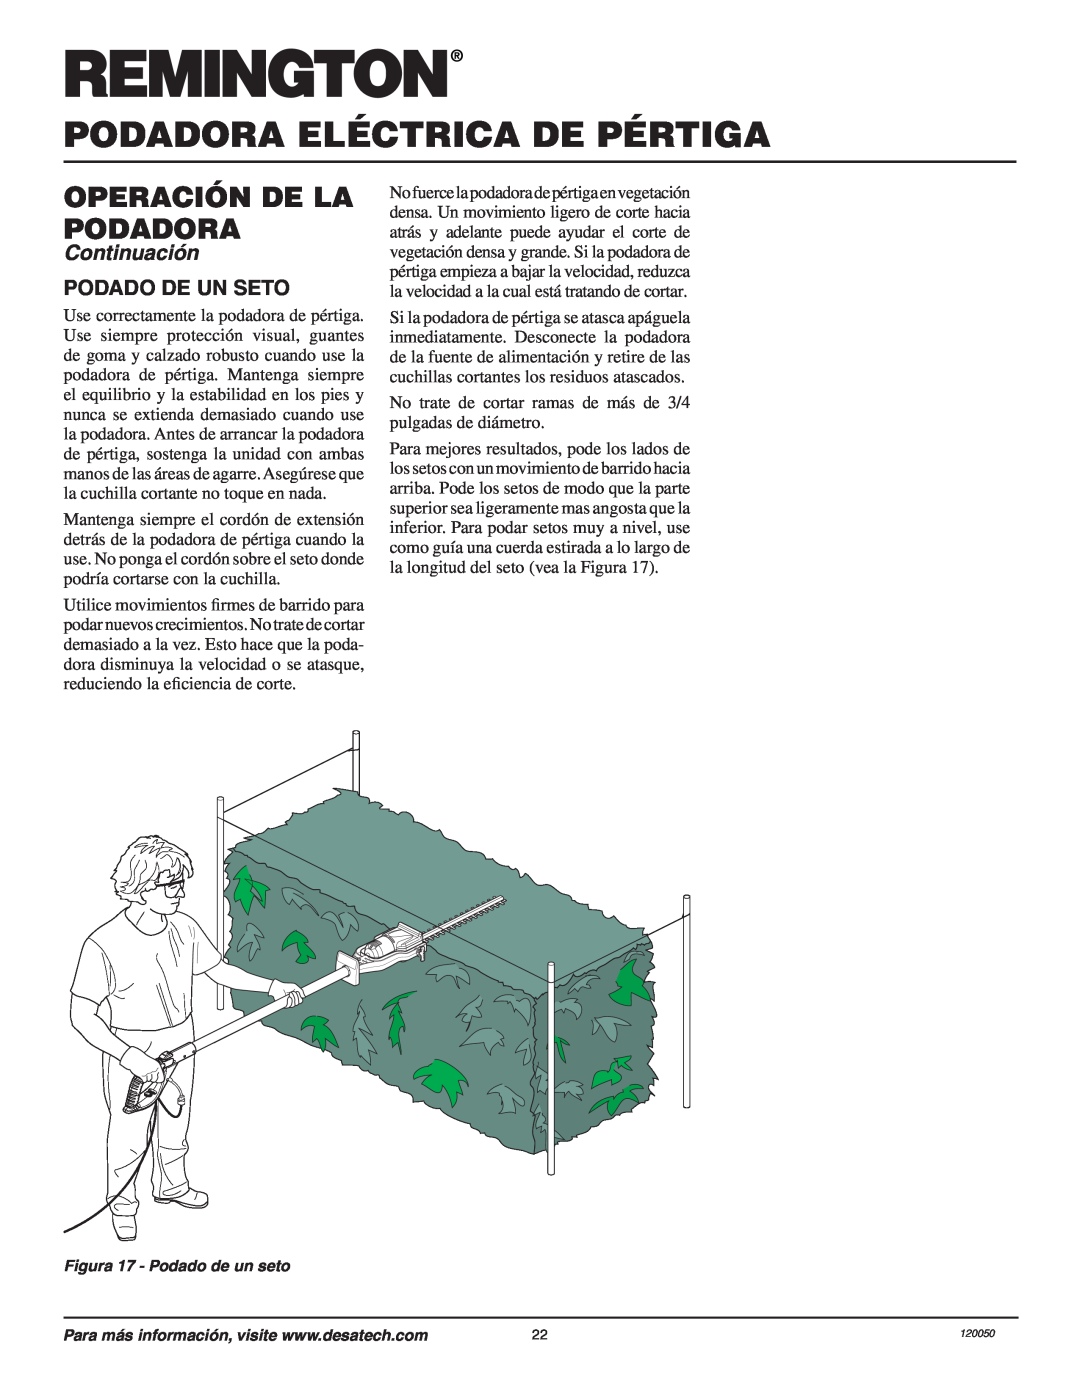 Remington AT3017BCA owner manual Podadora Eléctrica De Pértiga, Operación De La Podadora, Continuación, Podado De Un Seto 